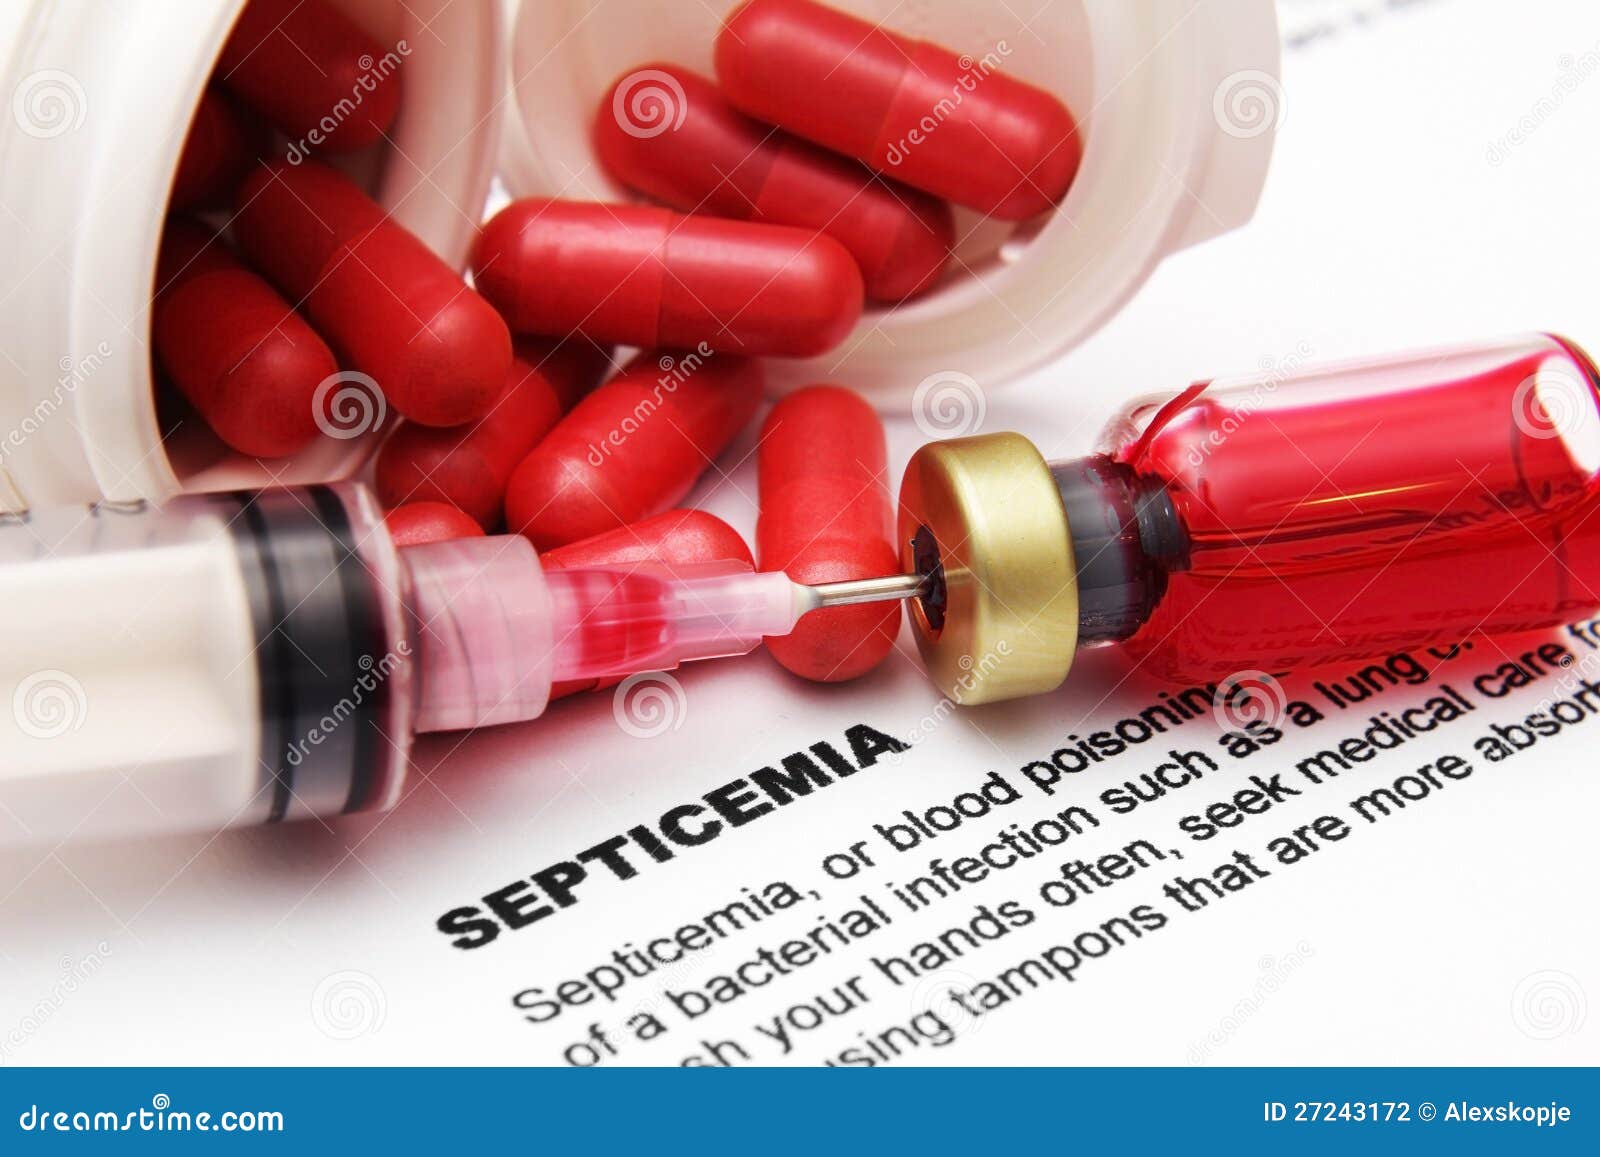 Septikemia